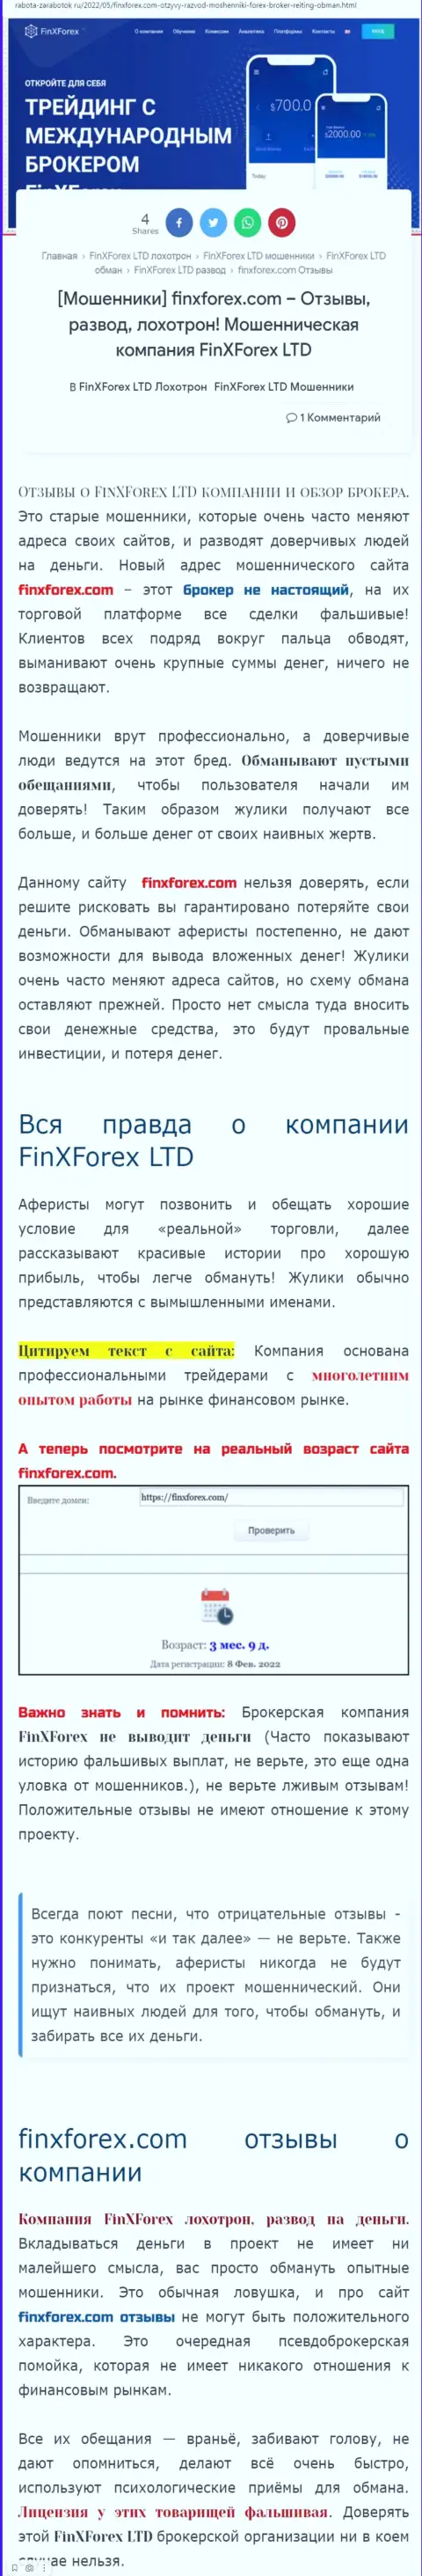 Автор обзорной публикации о FinXForex Com предупреждает, что в FinXForex Com мошенничают